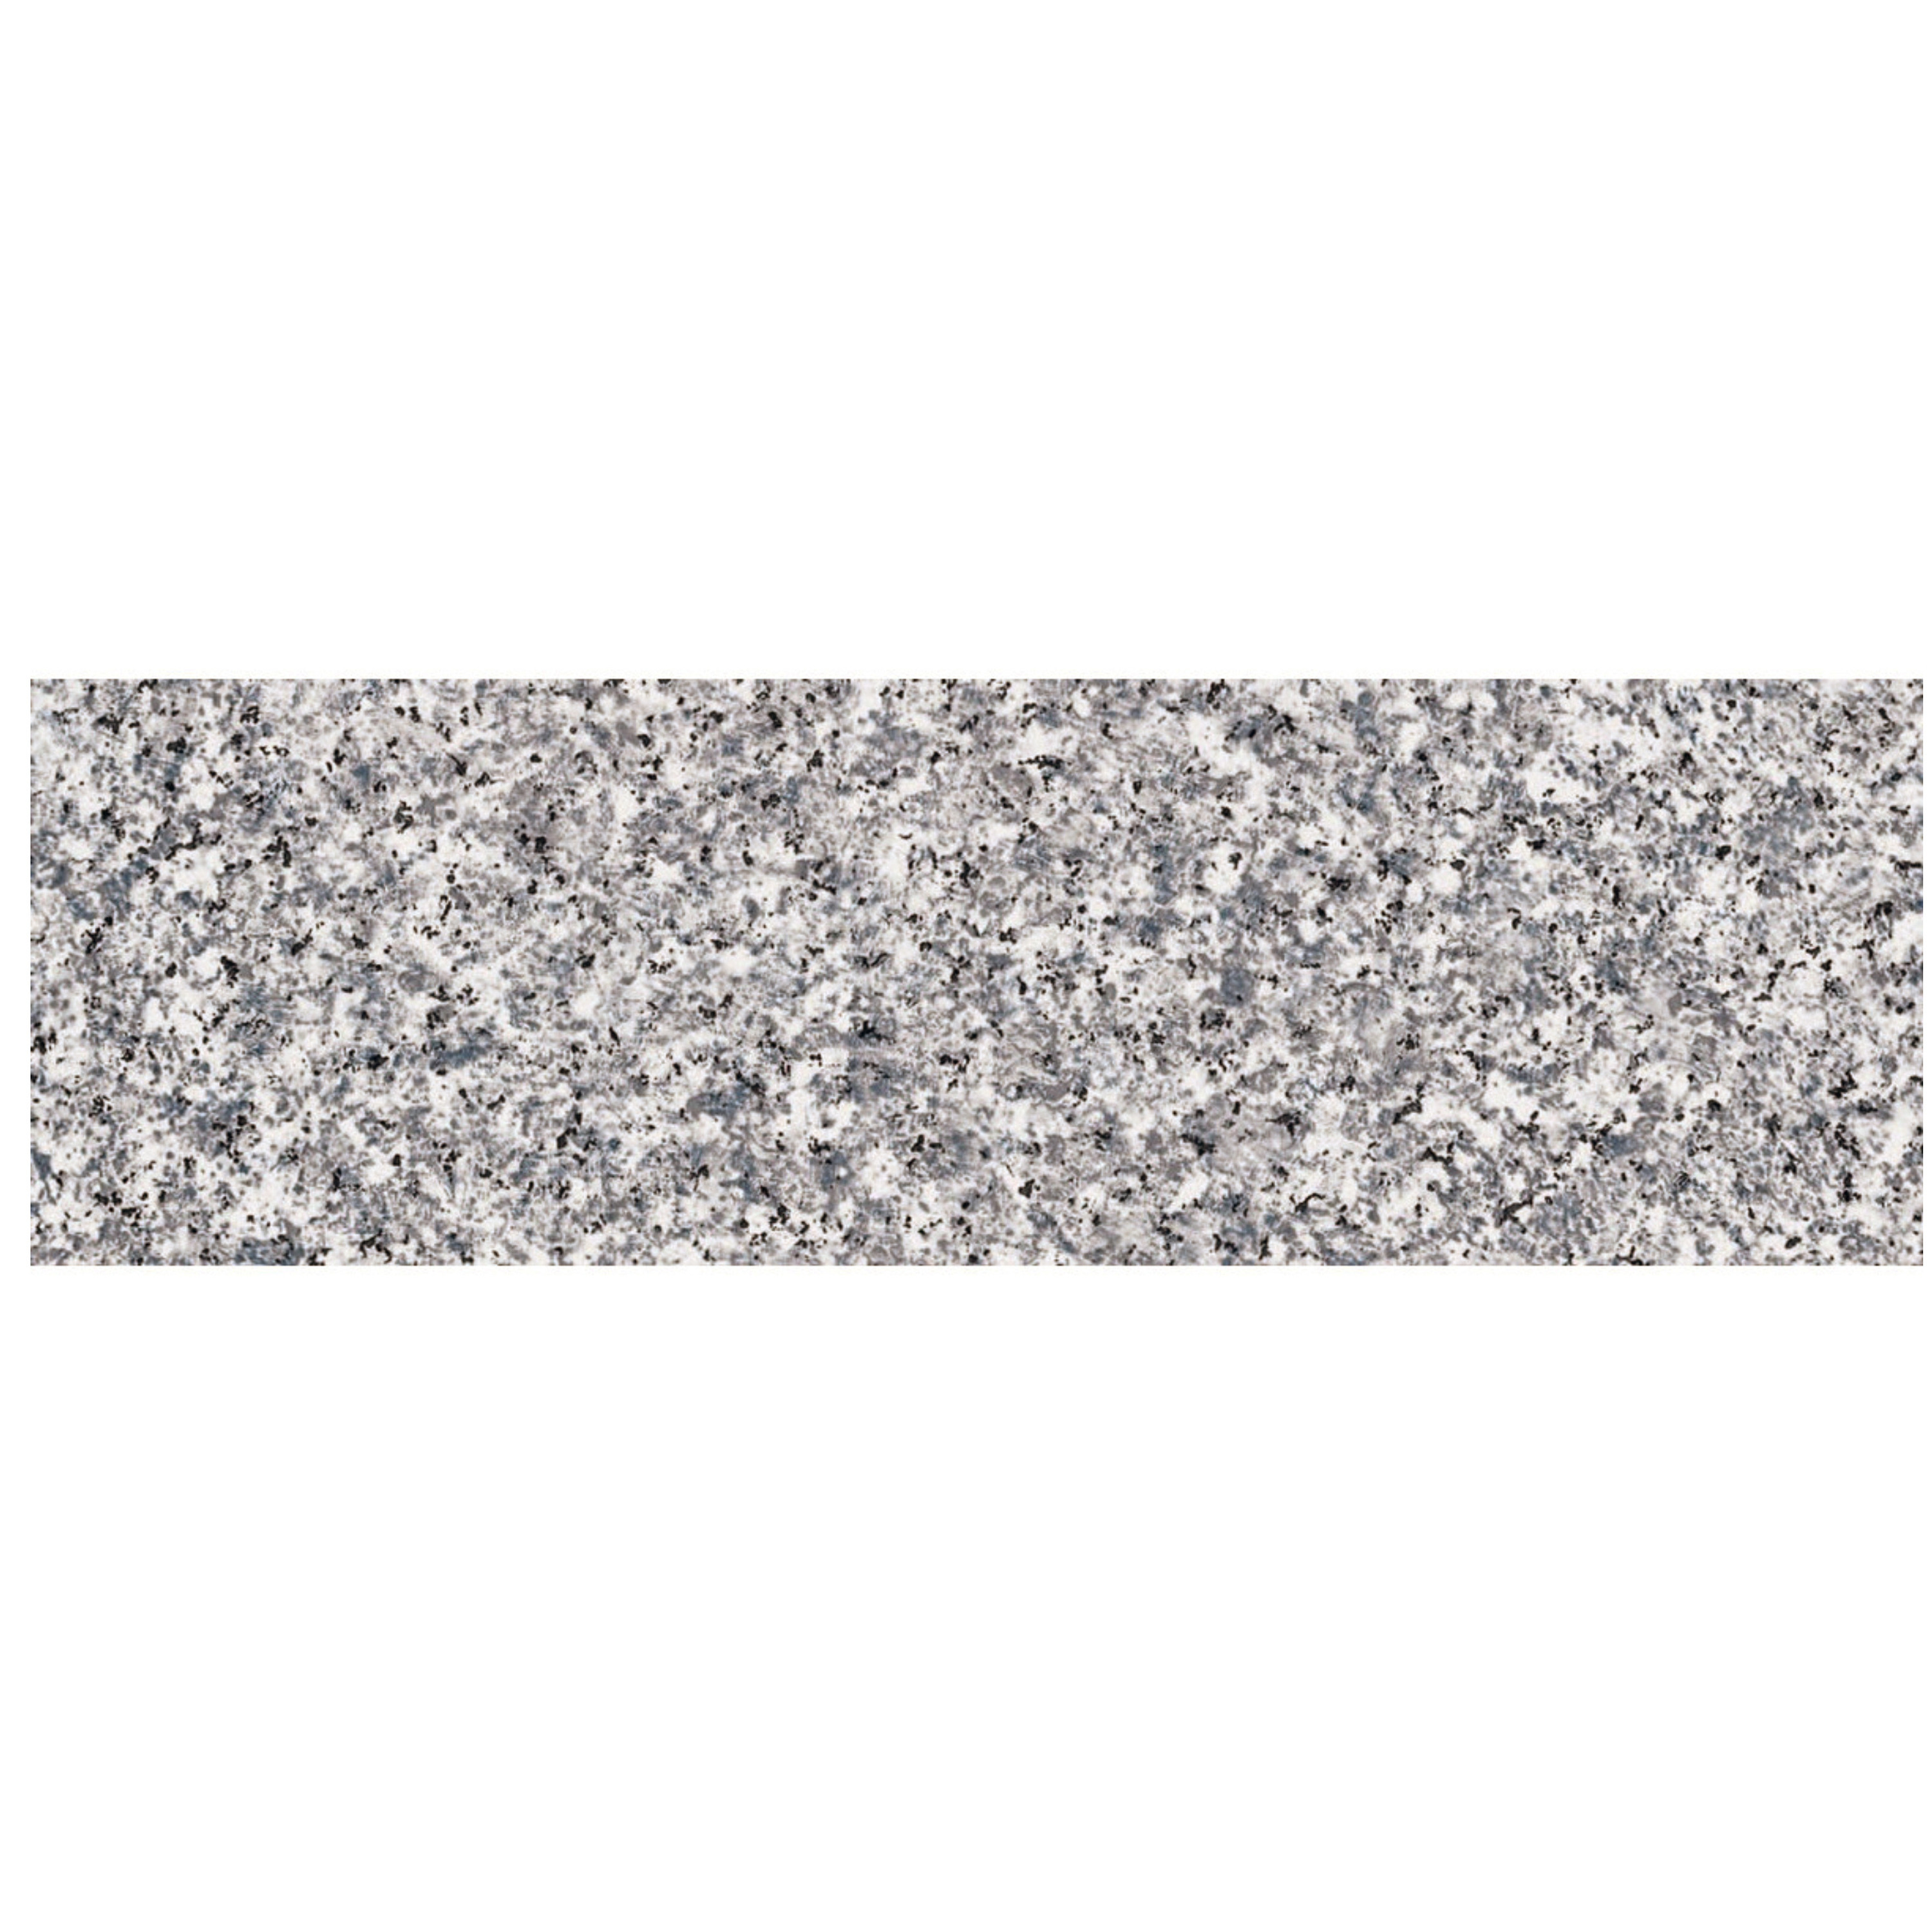 Decoratie plakfolie graniet look grijs-wit 45 cm x 2 meter zelfklevend